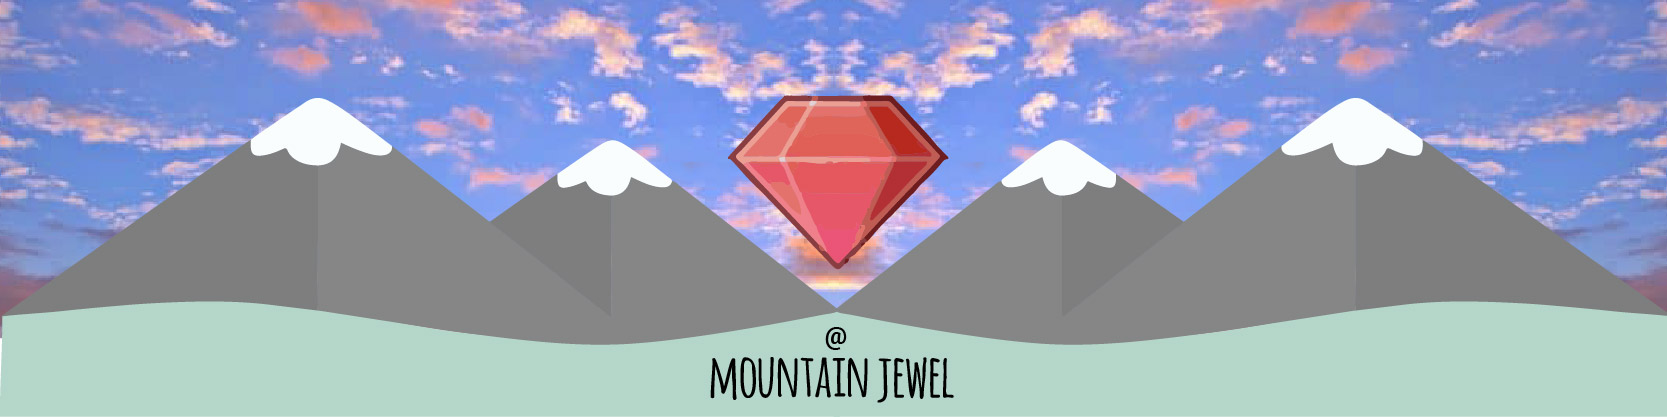 mountainjewel-01.jpg